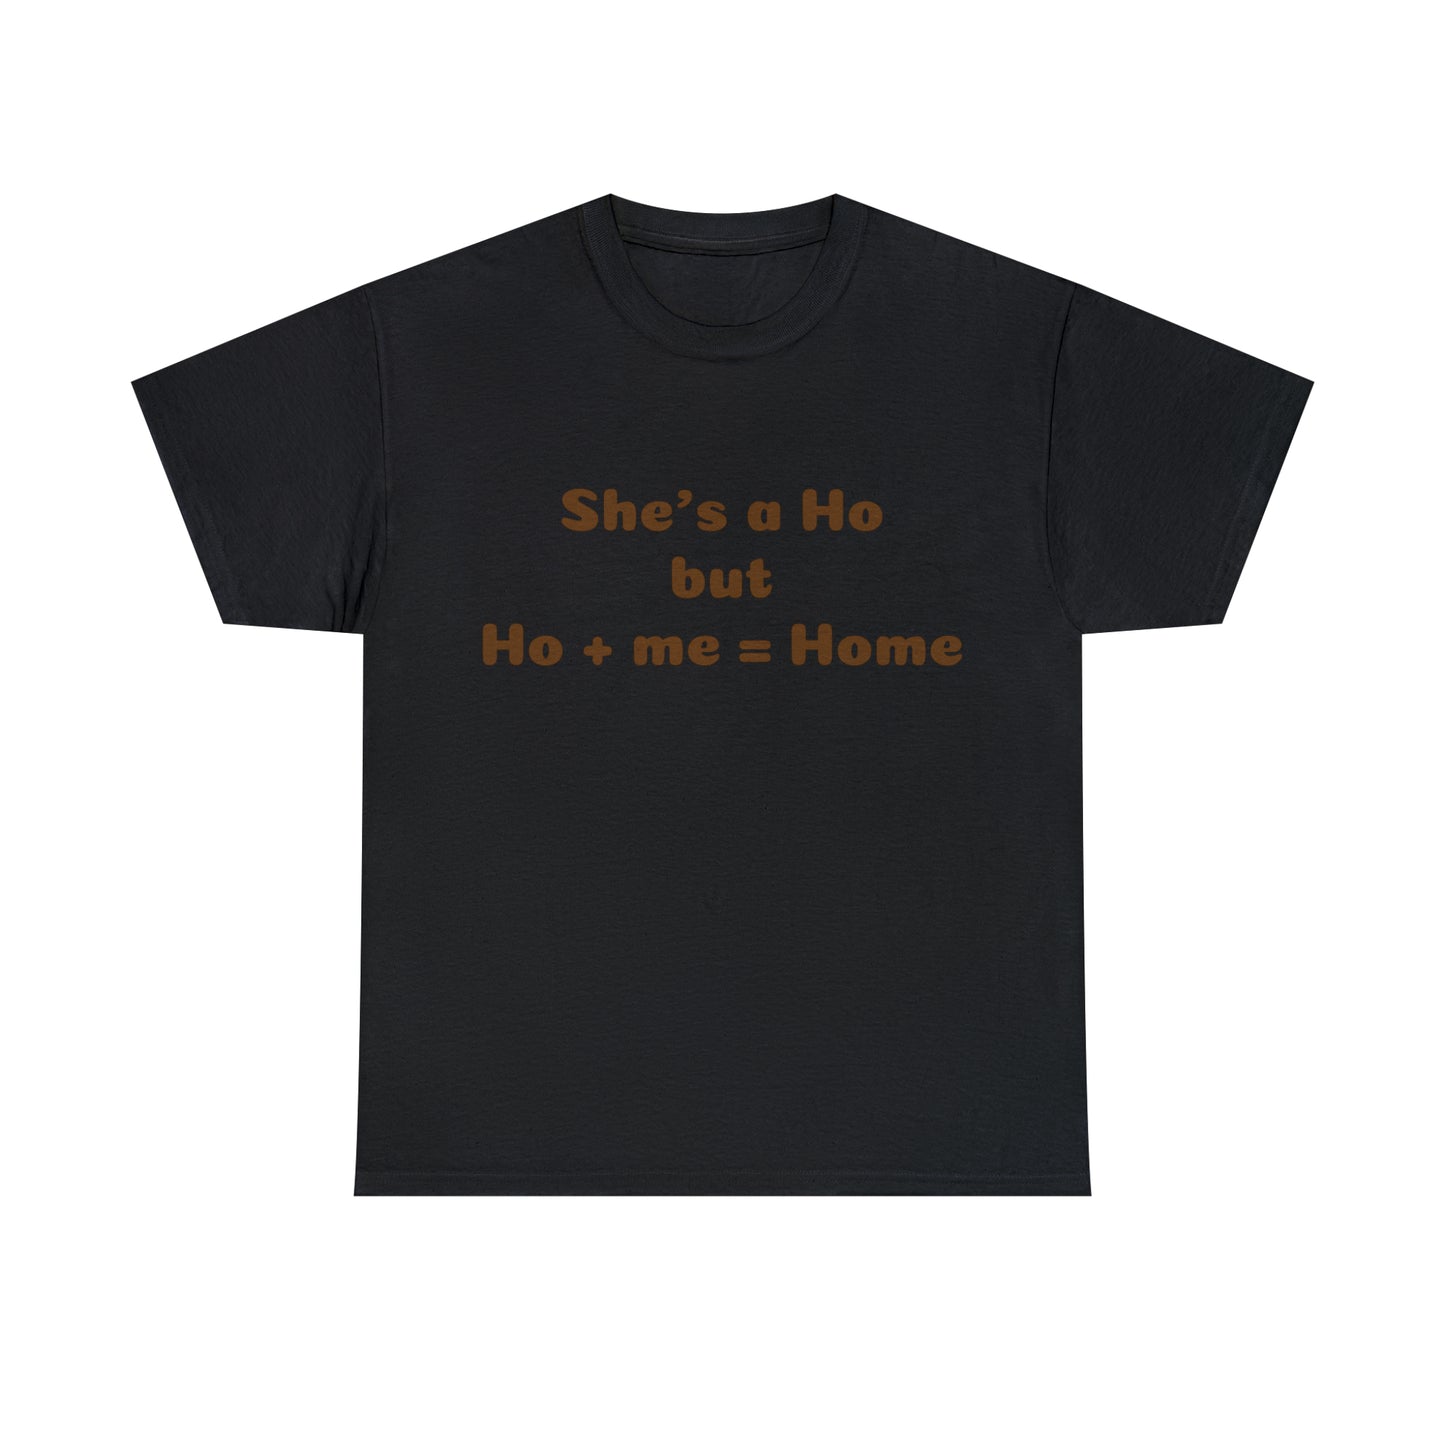 Custom parody T-shirt, She's a Ho --> Ho + me = Home shirt design